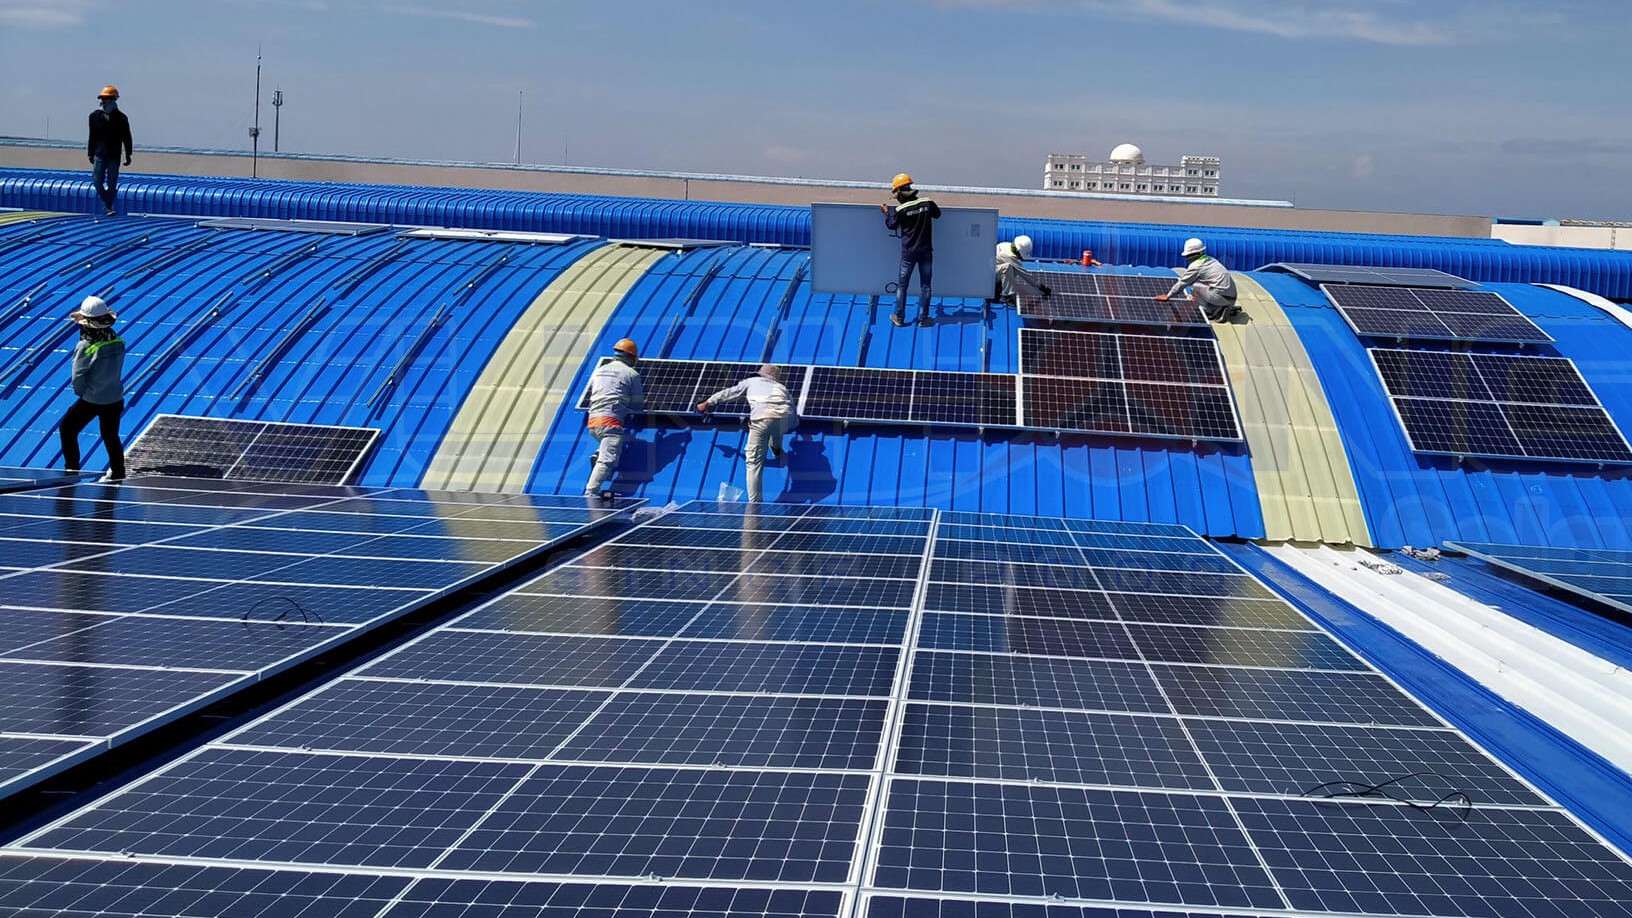 Vât liệu xây dựng: Lắp đặt điện năng lượng mặt trời trên mái nhà Lap-dat-dien-nang-luong-mat-troi-tren-mai-nha-02